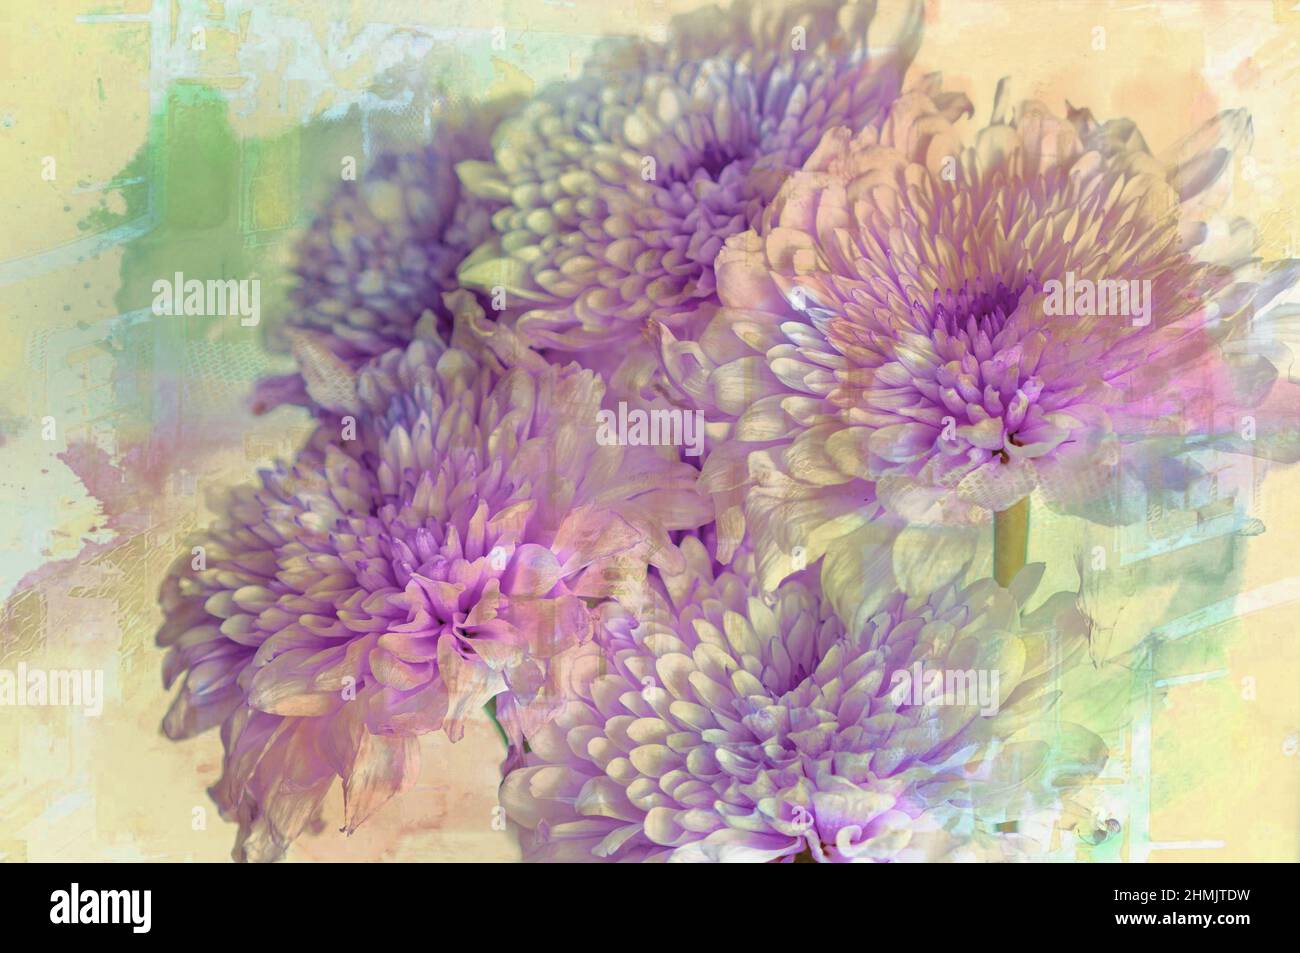 Wall Art Images of Flowers ensuite traitées comme des images de beaux-arts avec un logiciel de montage. Images idéales pour les types Banque D'Images